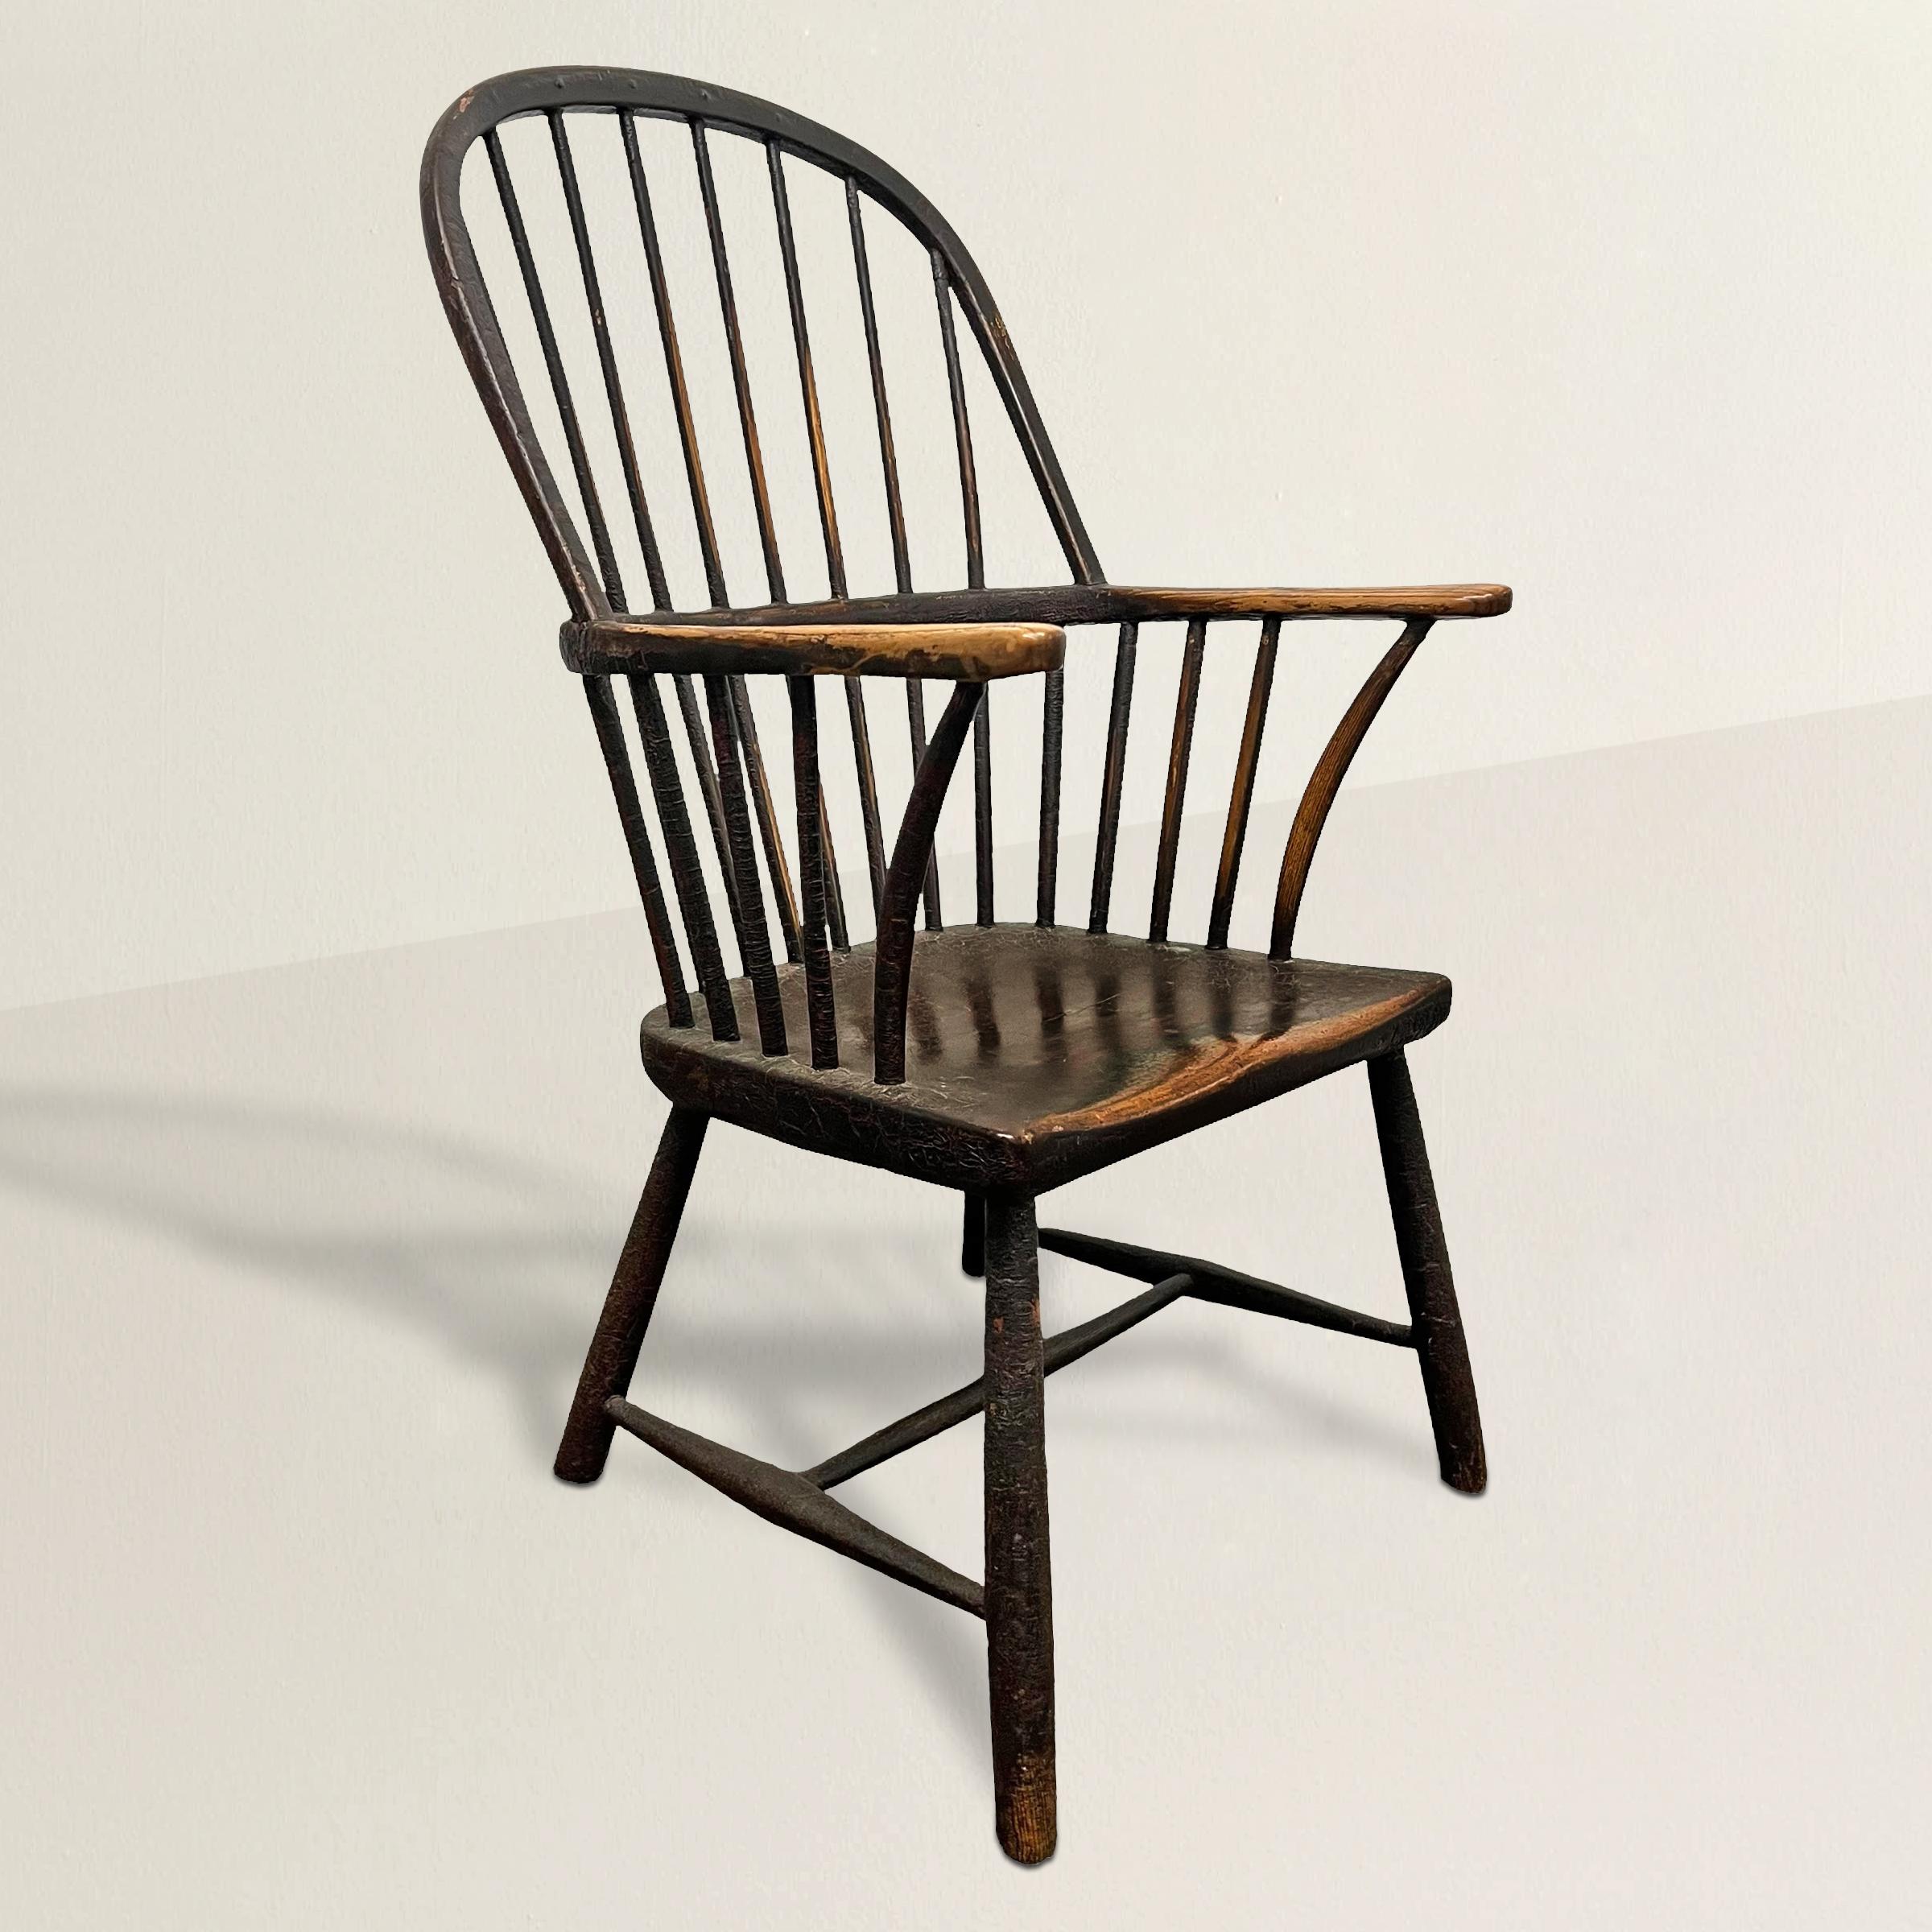 Cet exquis fauteuil Windsor anglais du XVIIIe siècle témoigne du savoir-faire intemporel de l'époque. Sa structure robuste, fabriquée à partir d'orme, met en valeur un siège épais à une seule planche qui s'ajuste gracieusement pour offrir confort et